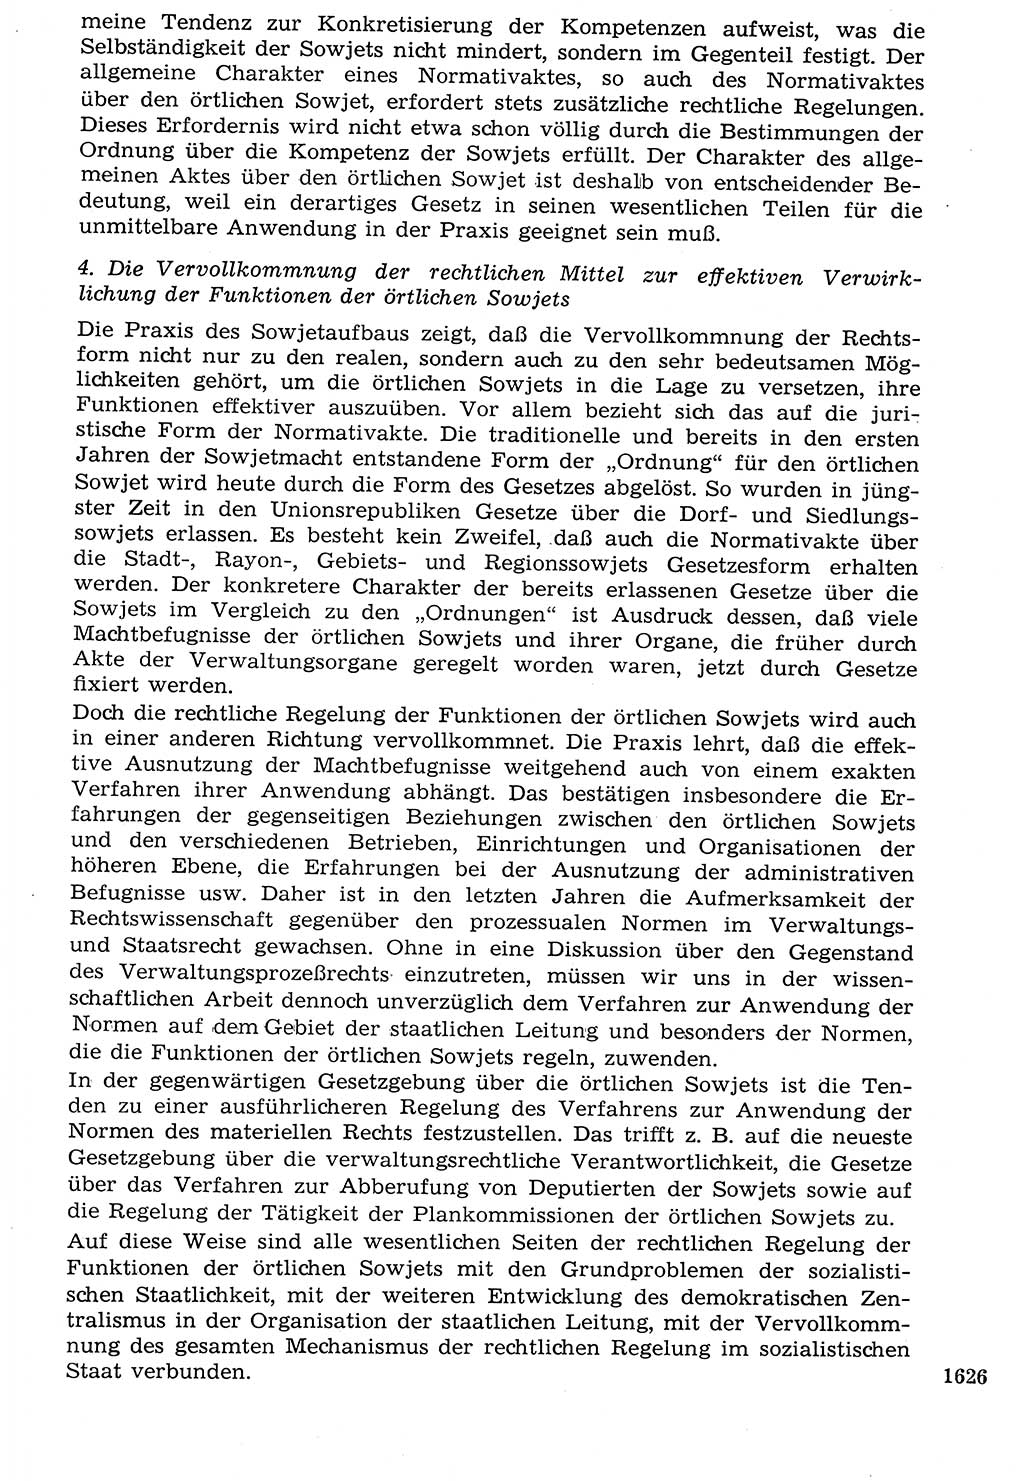 Staat und Recht (StuR), 17. Jahrgang [Deutsche Demokratische Republik (DDR)] 1968, Seite 1626 (StuR DDR 1968, S. 1626)